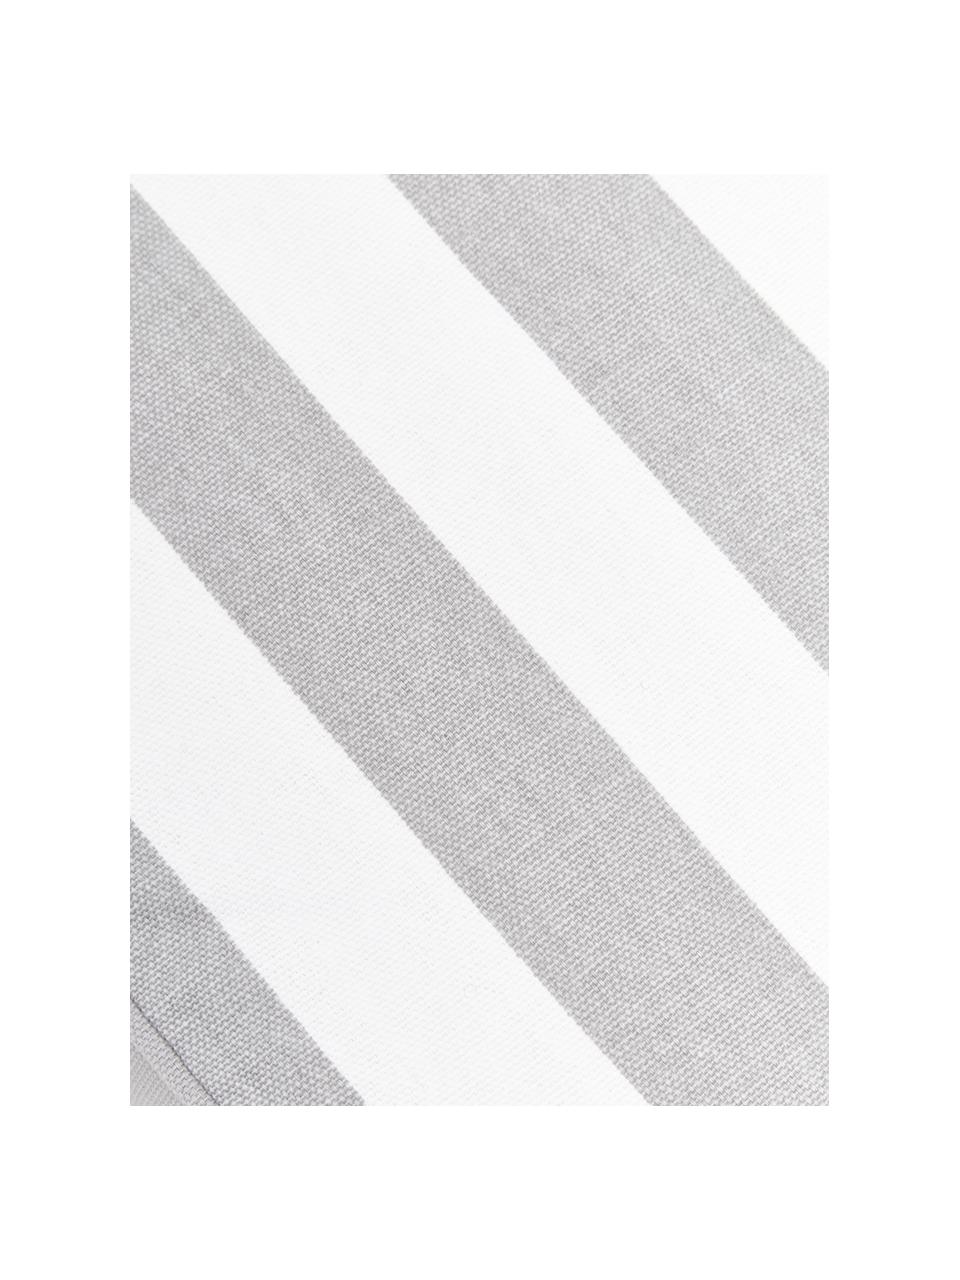 Hohes Sitzkissen Timon, gestreift, Bezug: 100% Baumwolle, Grau, Weiss, B 40 x L 40 cm